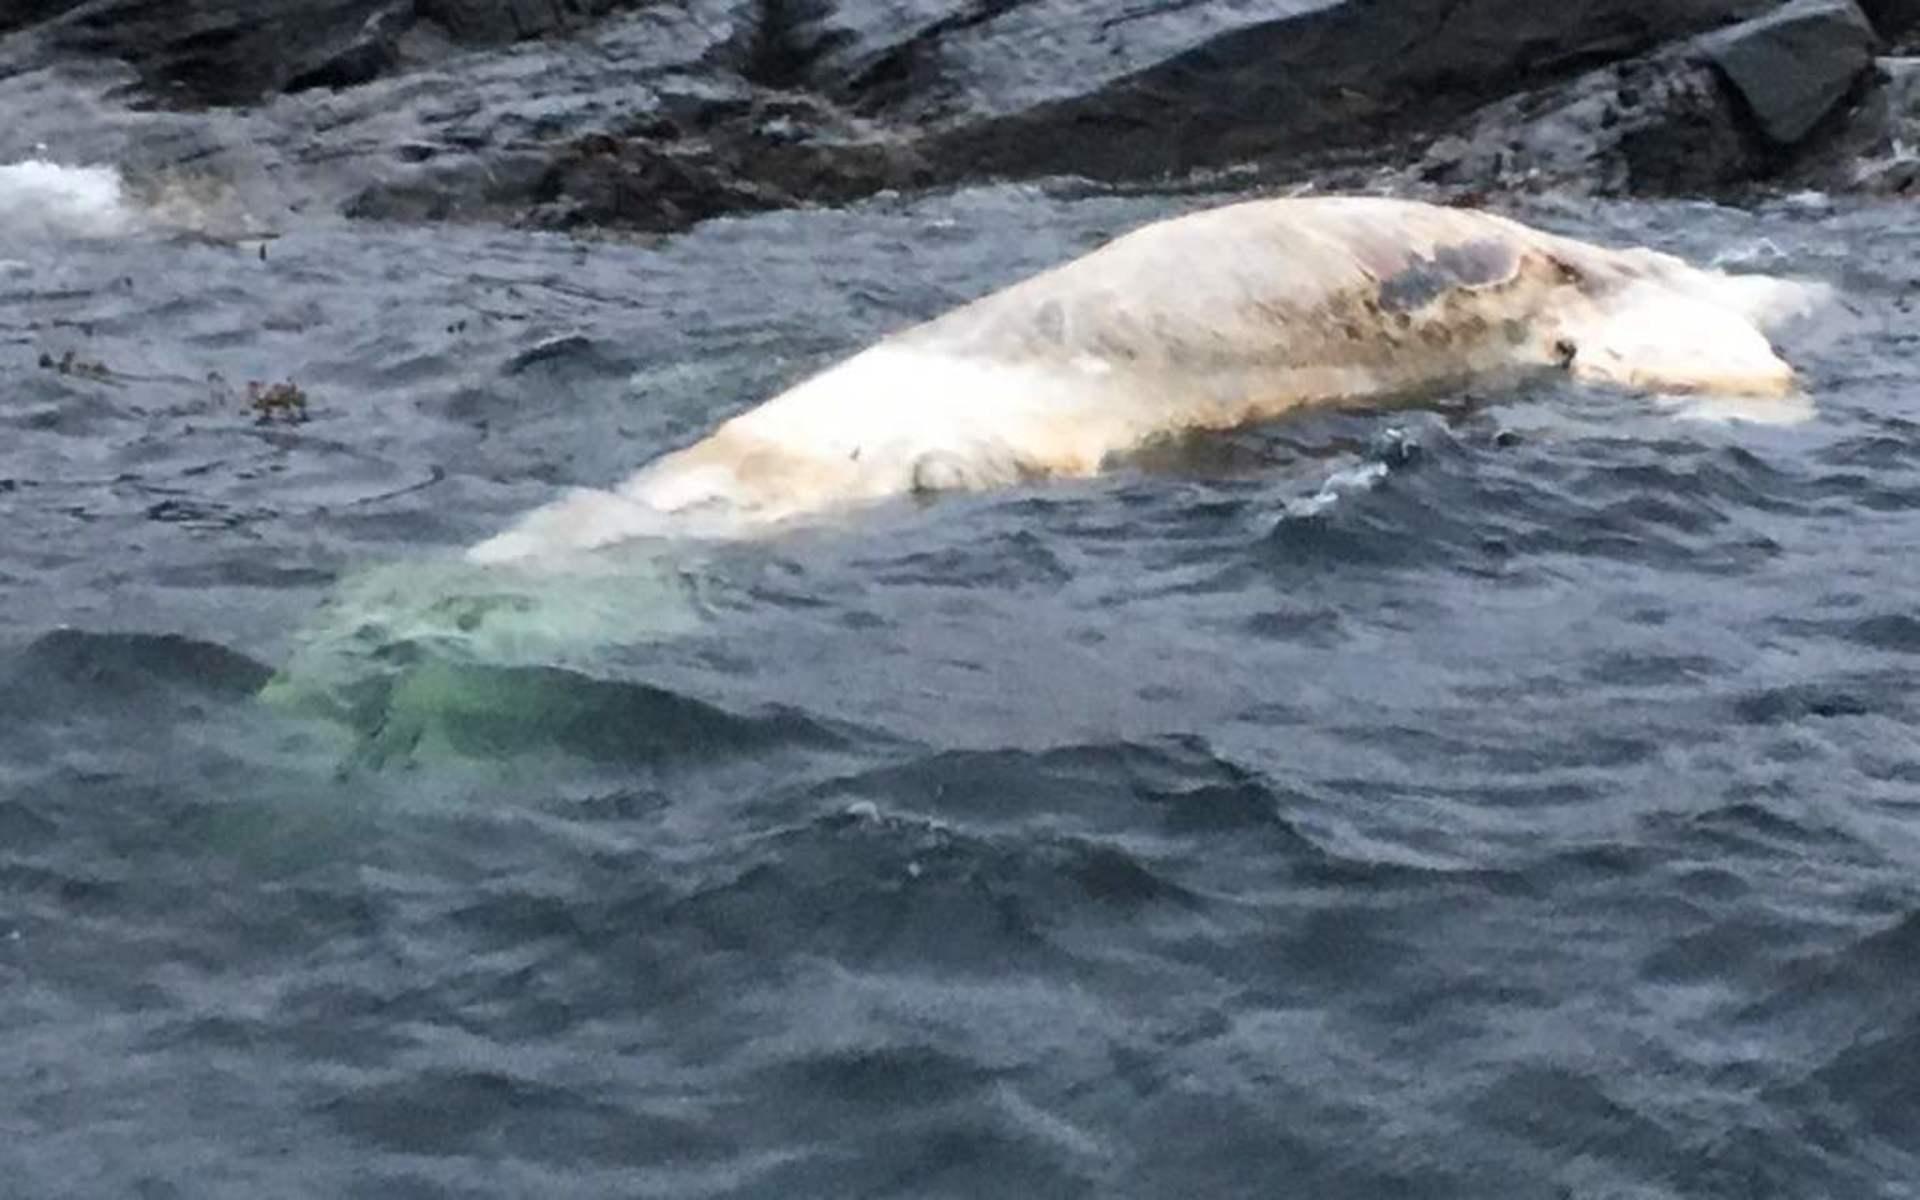 Död blåval har hittats utanför Mollösund. Foto: Kustbevakningen00